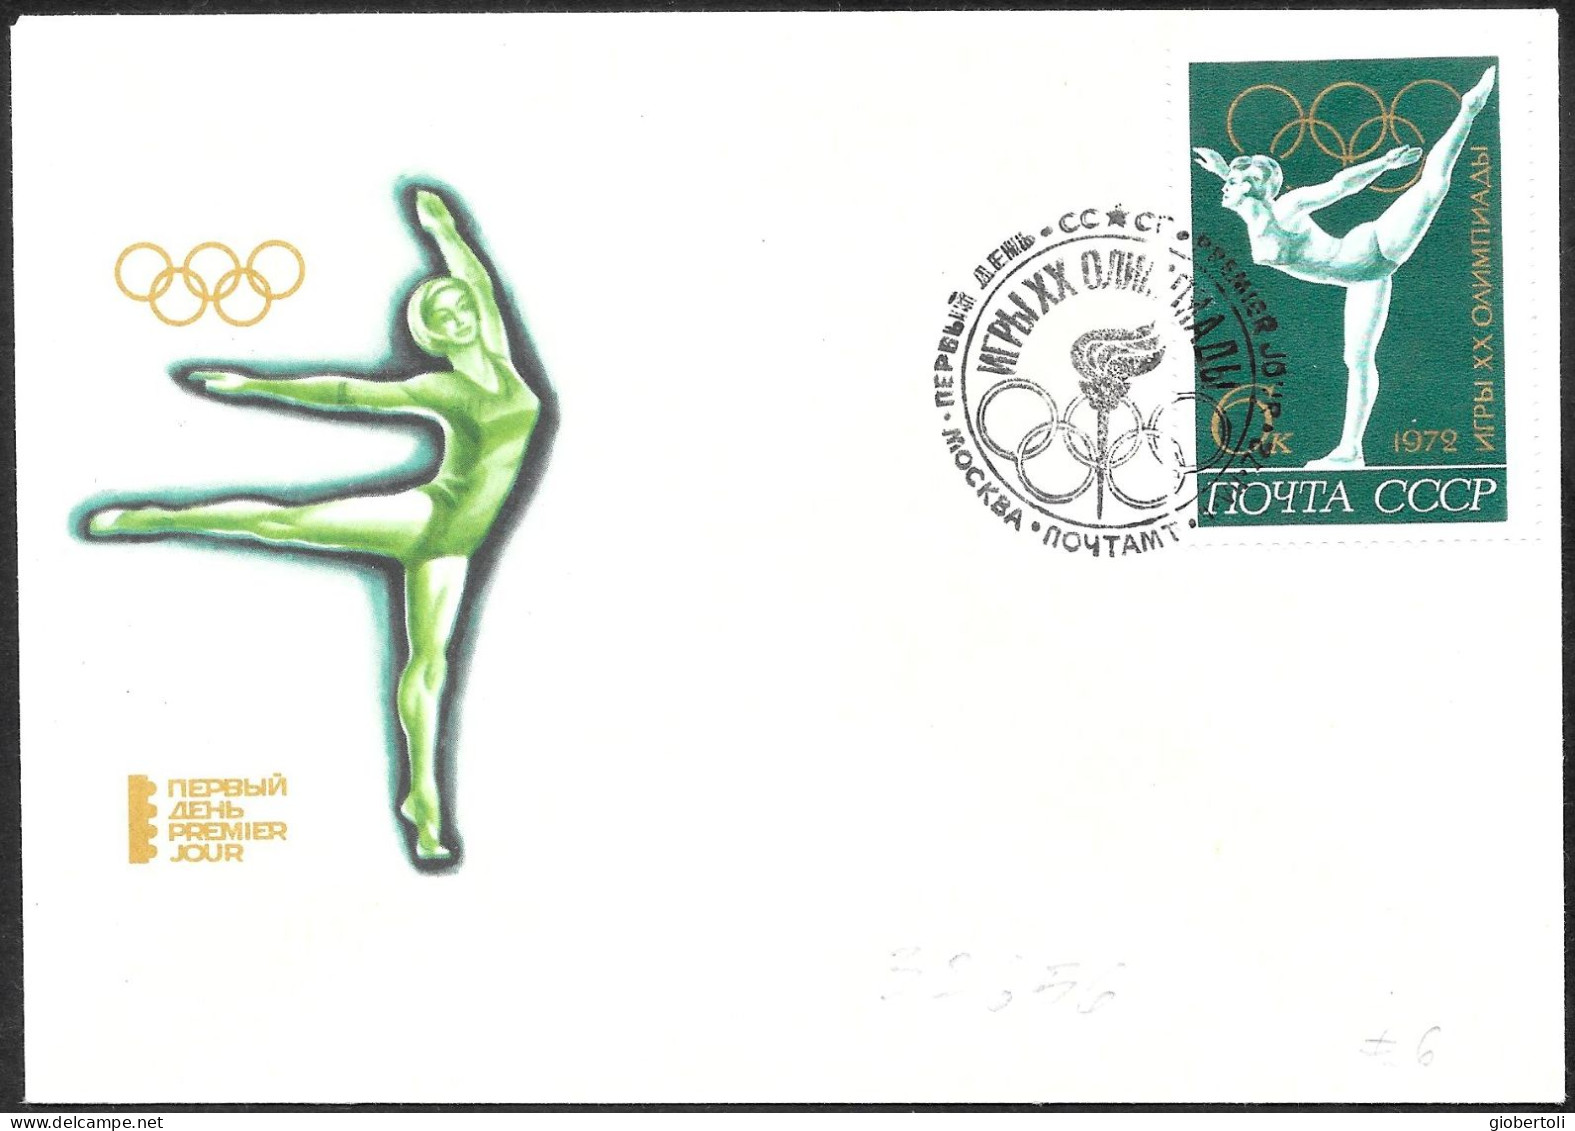 URSS: FDC, Ginnastica Femminile, Women's Gymnastics, Gymnastique Féminine - Verano 1972: Munich